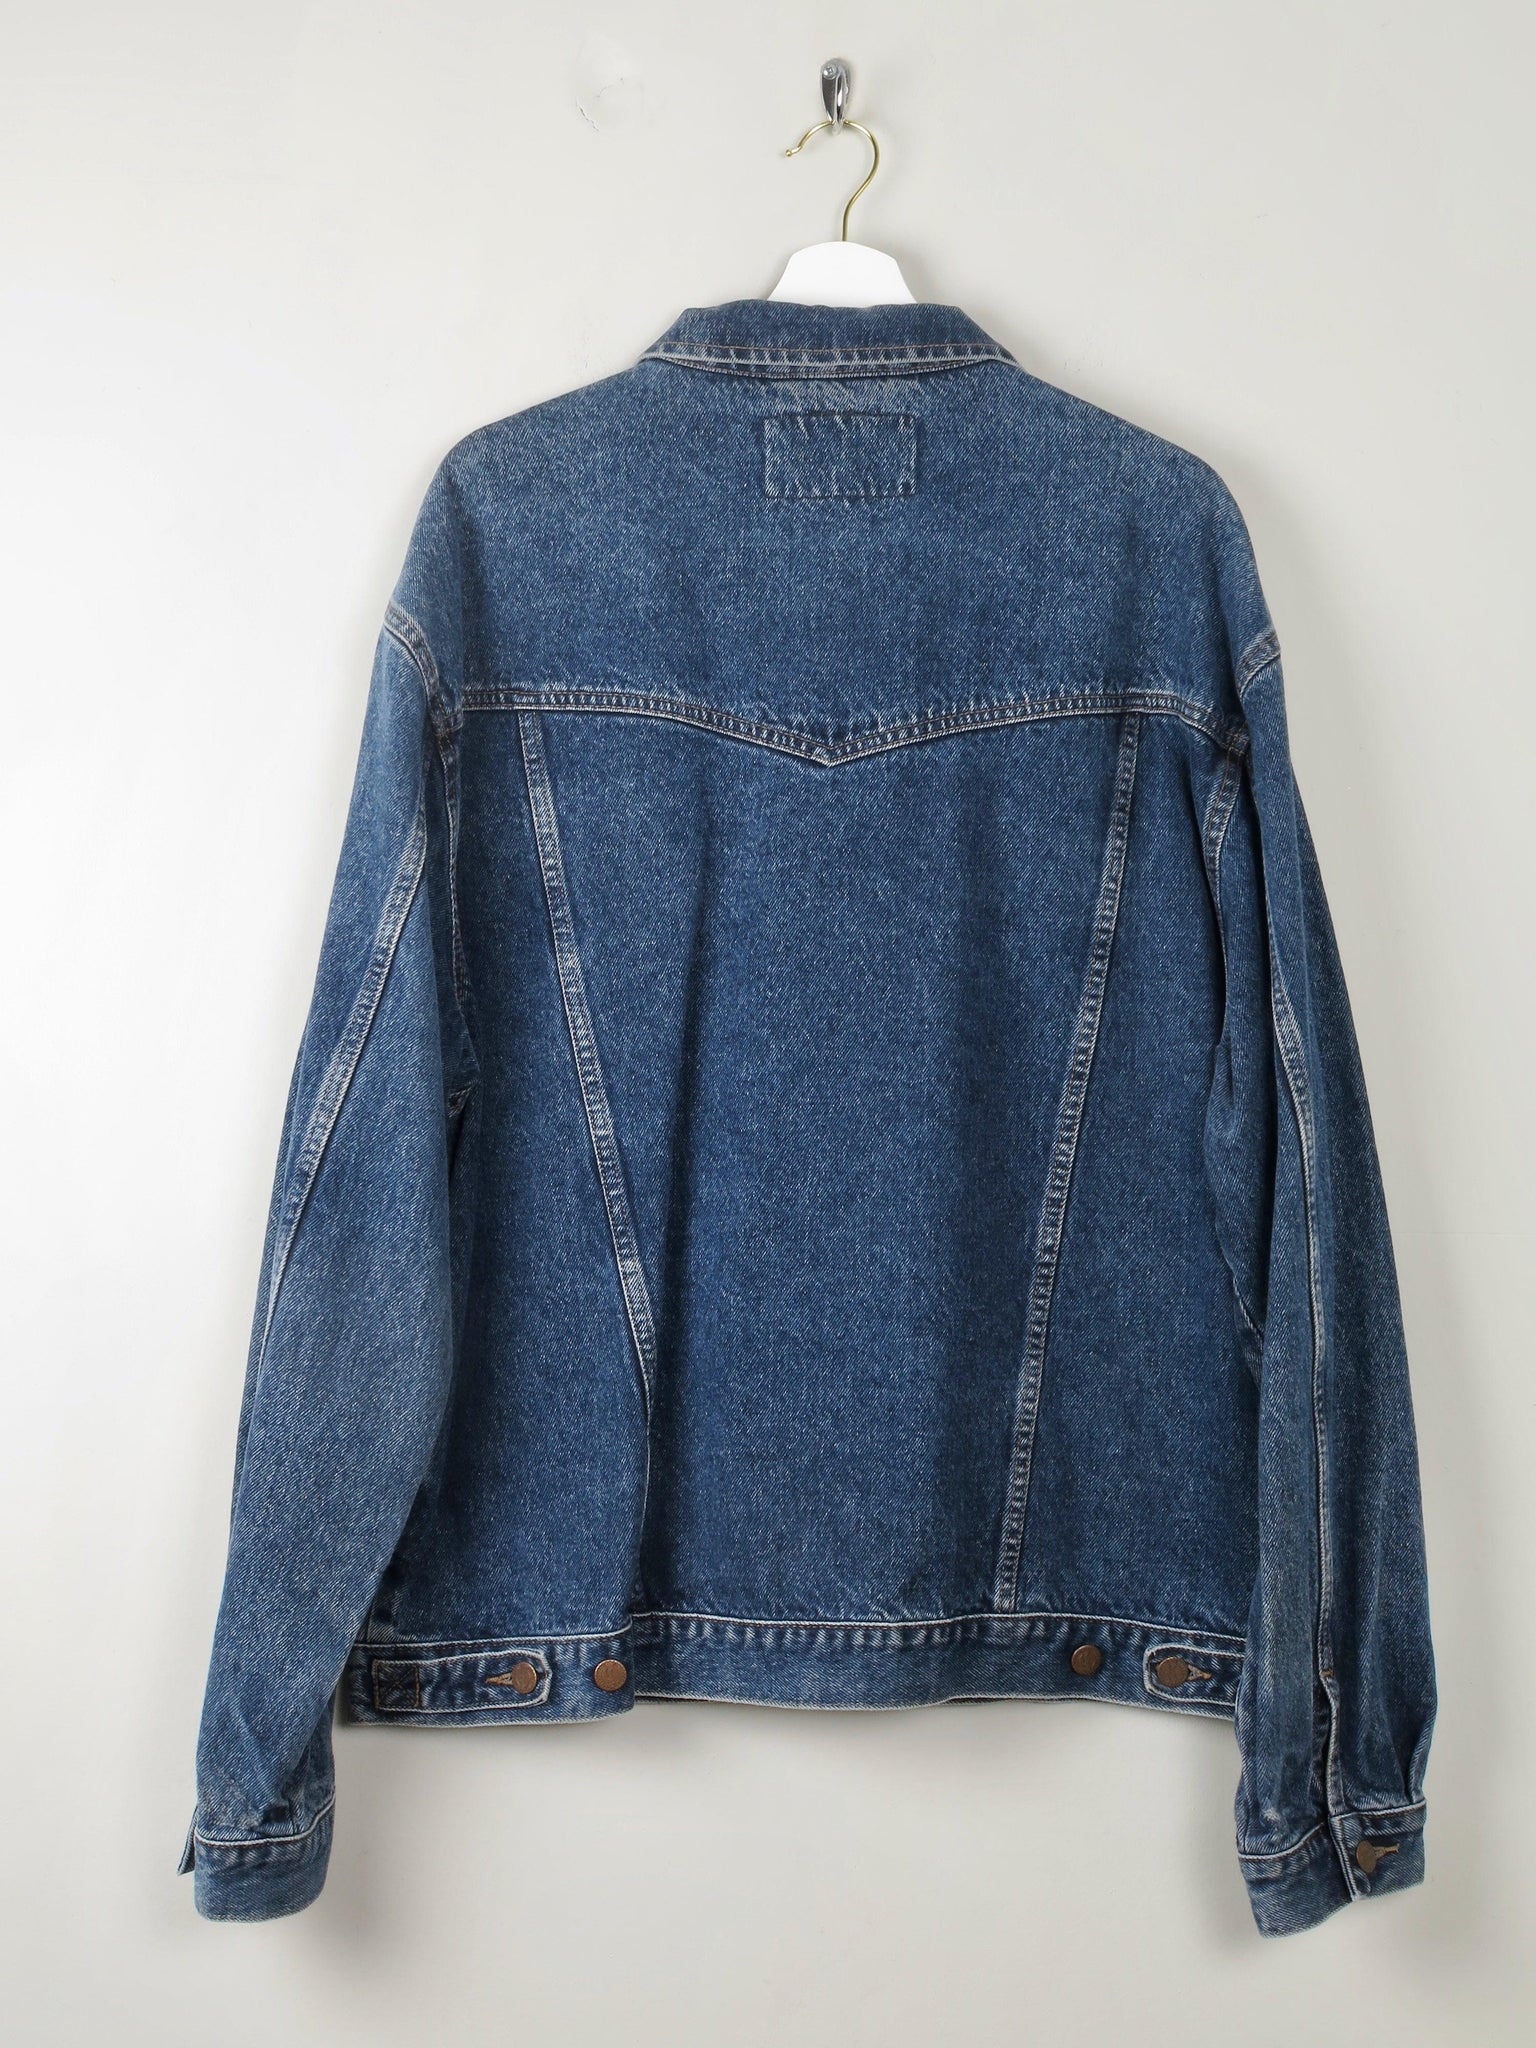 Men's Vintage Wrangler Denim Jacket XL - The Harlequin